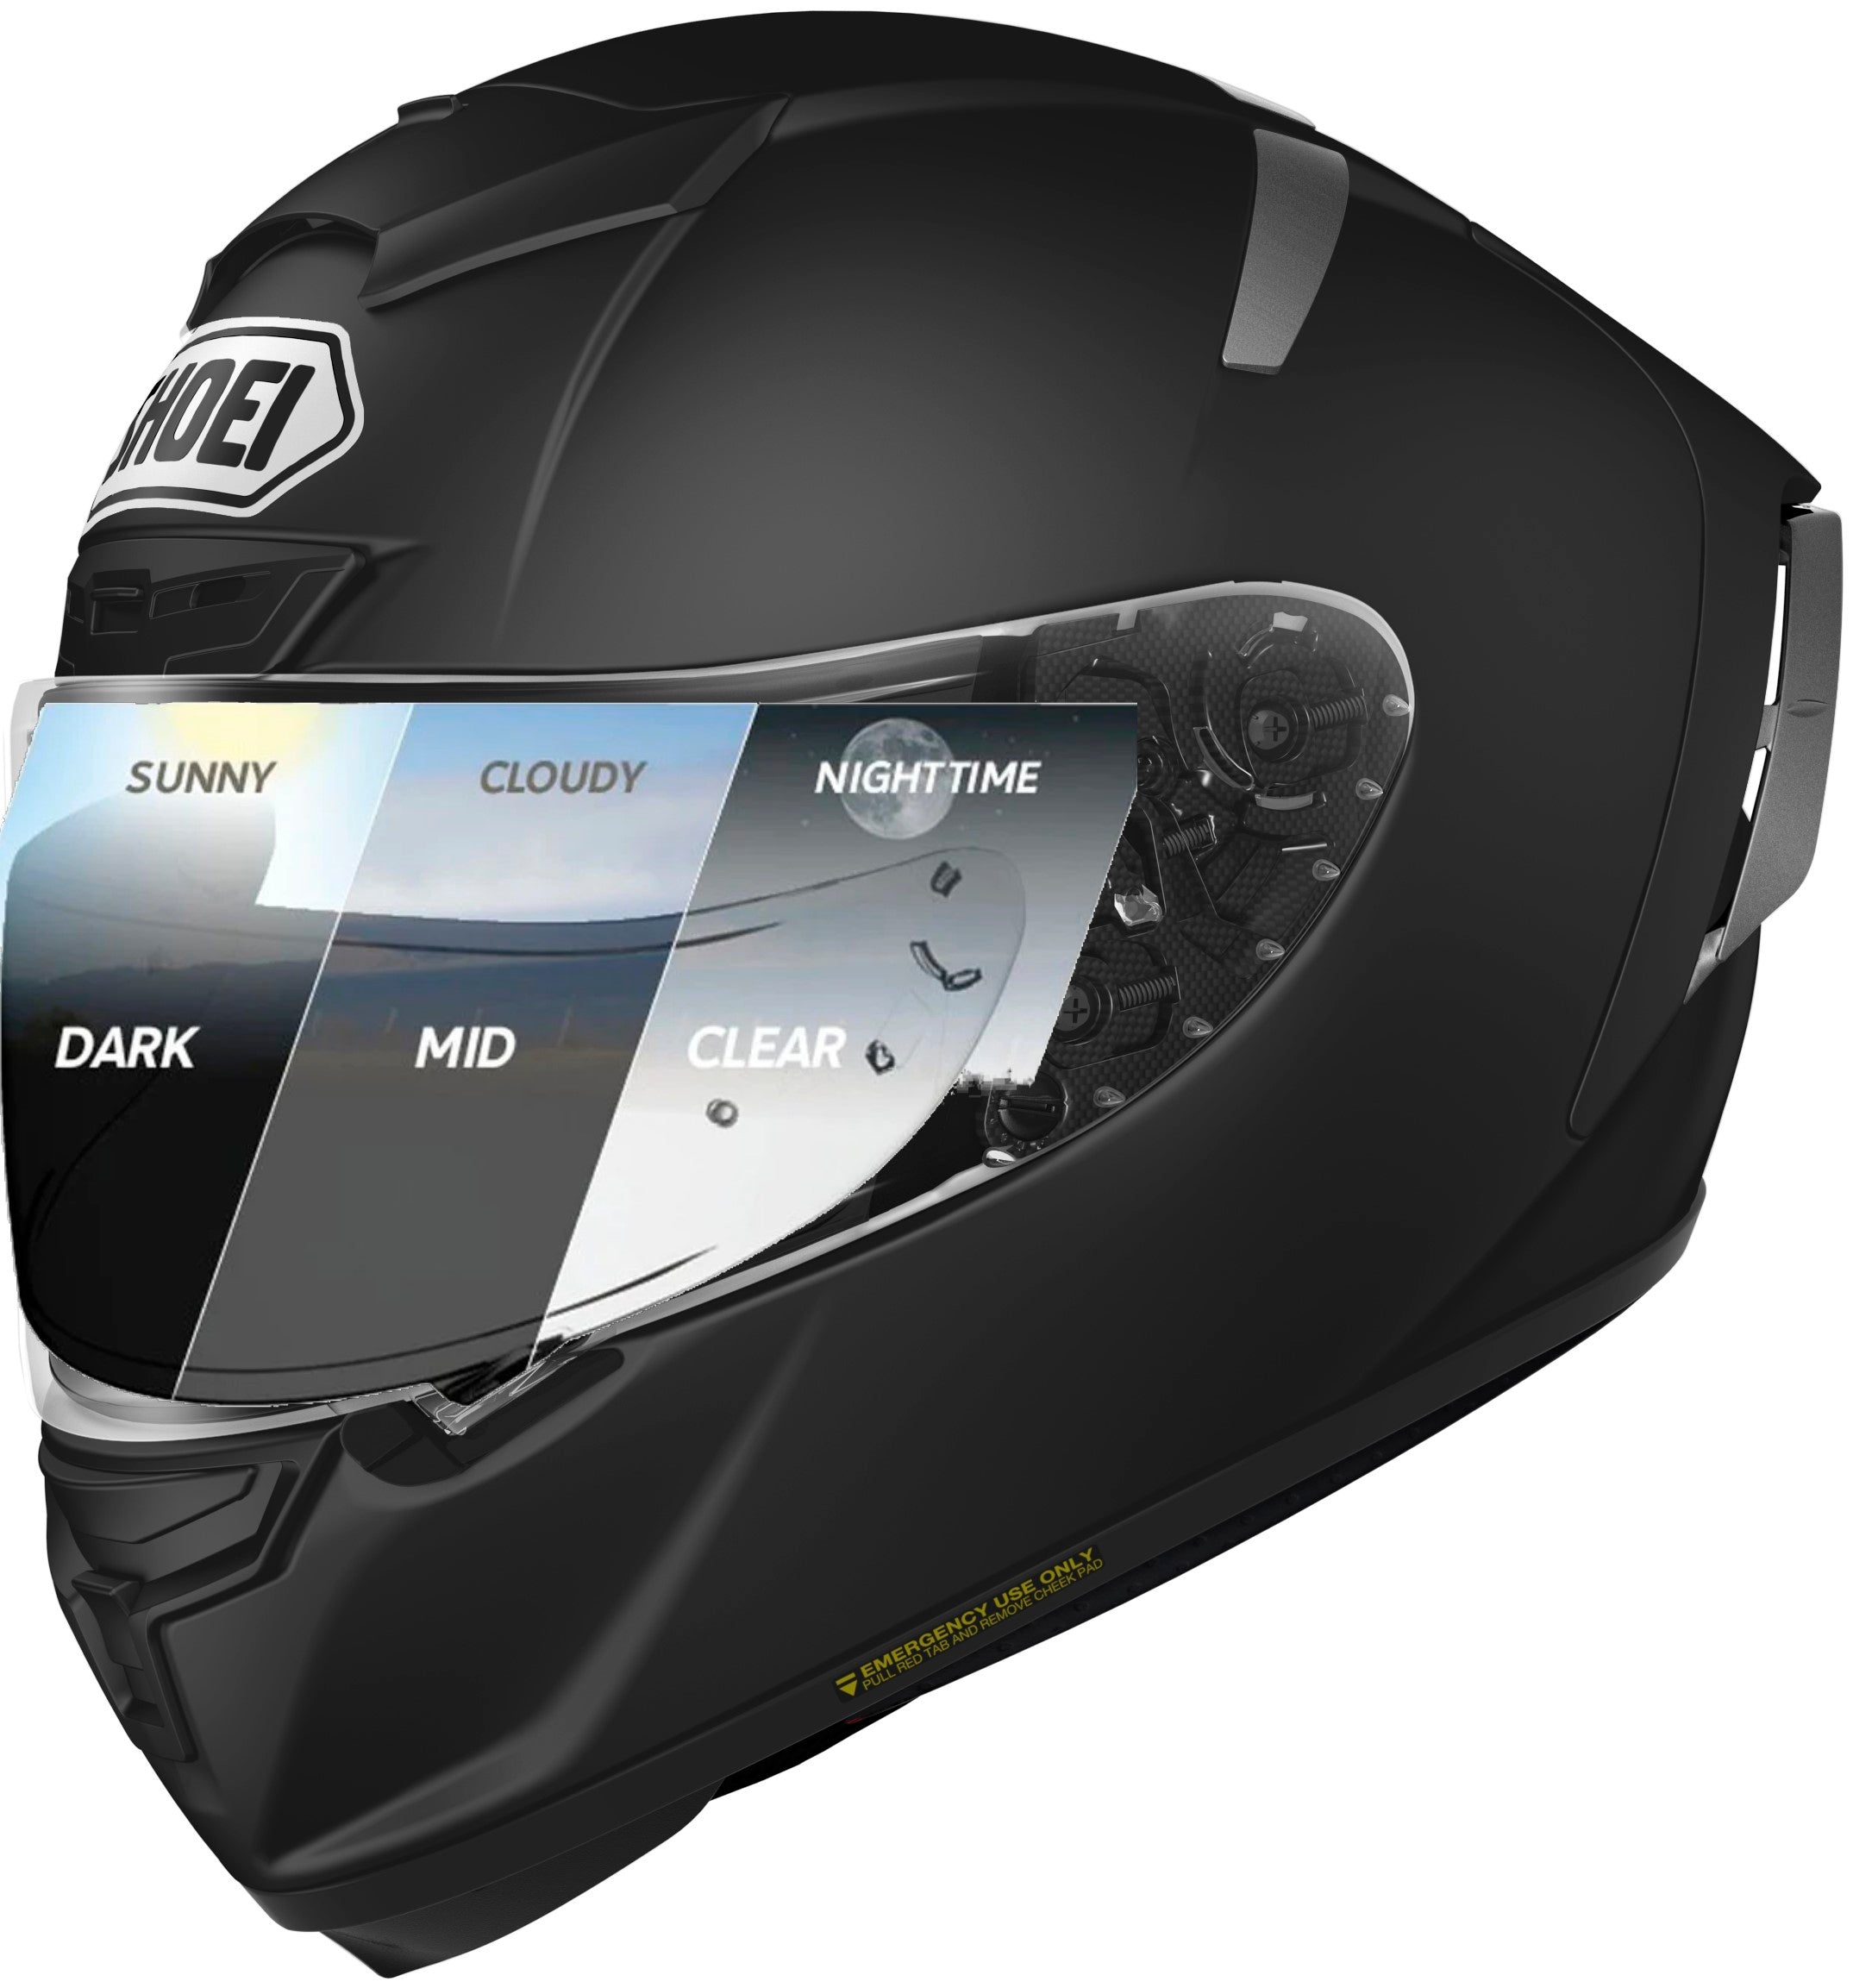 Cardo Spirit HD Bluetooth Headset Single – HelmetCountry.com